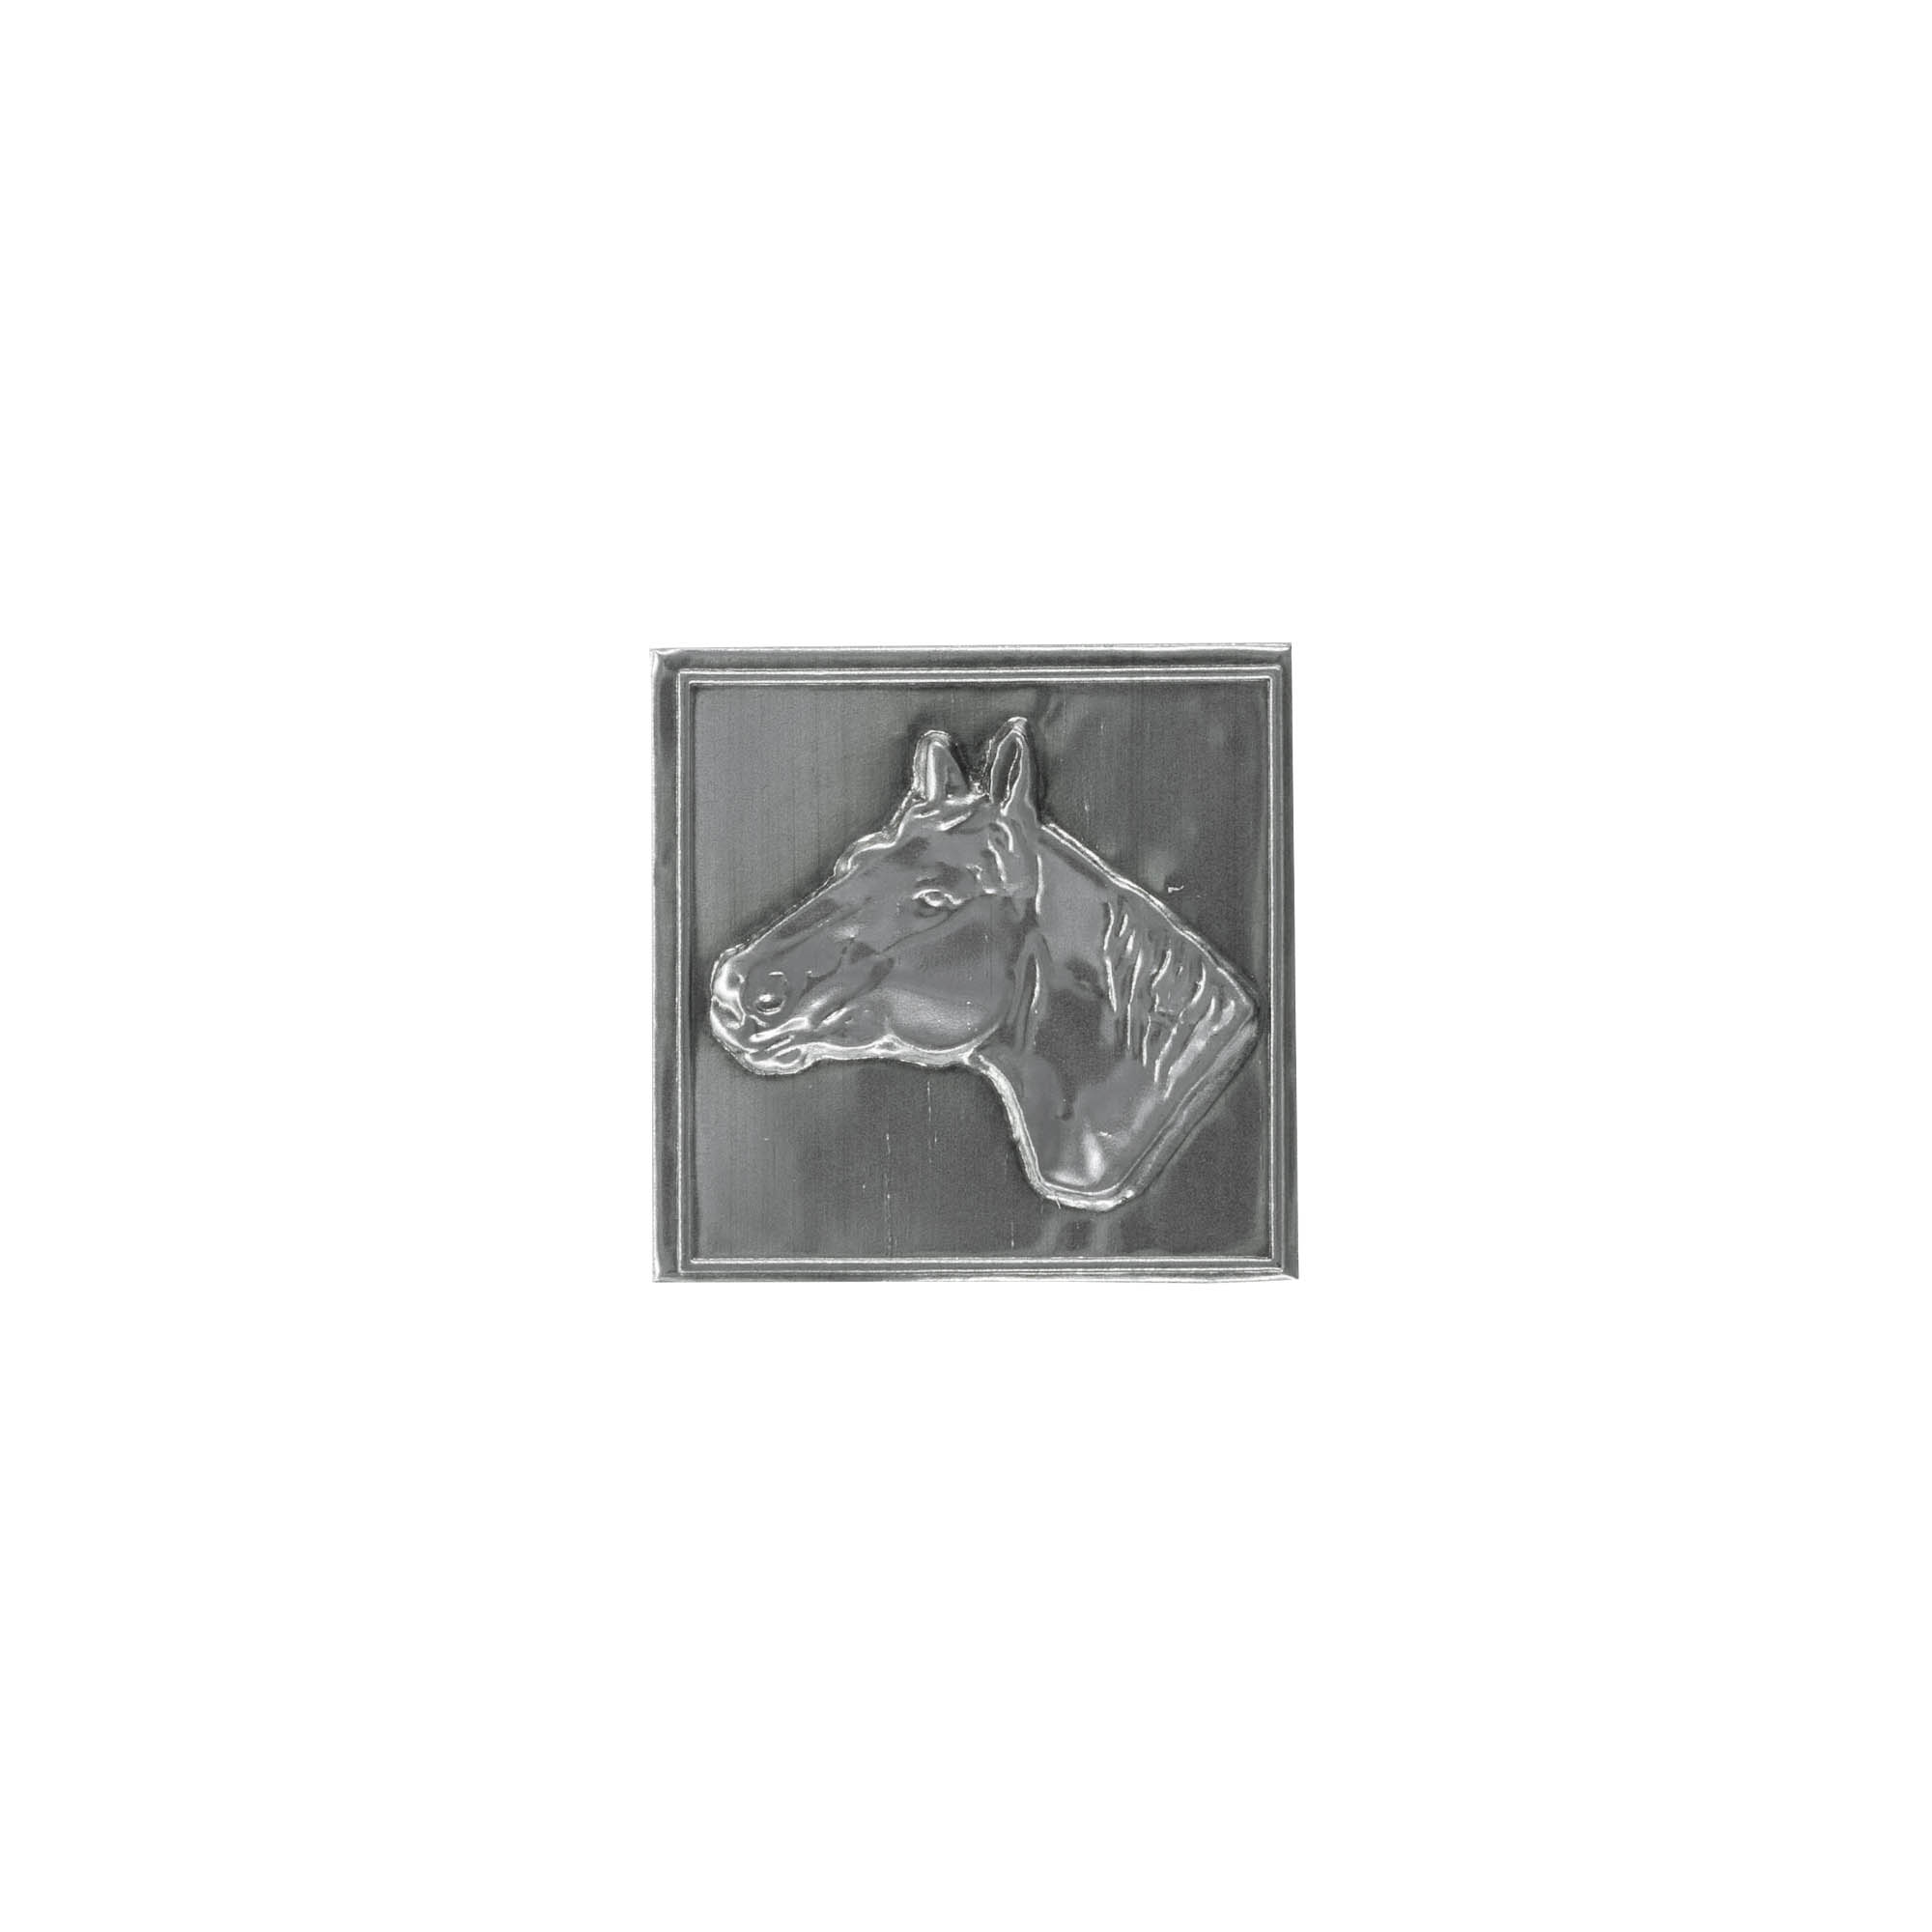 Tennetikett 'Häst', kvadratisk, metall, silver